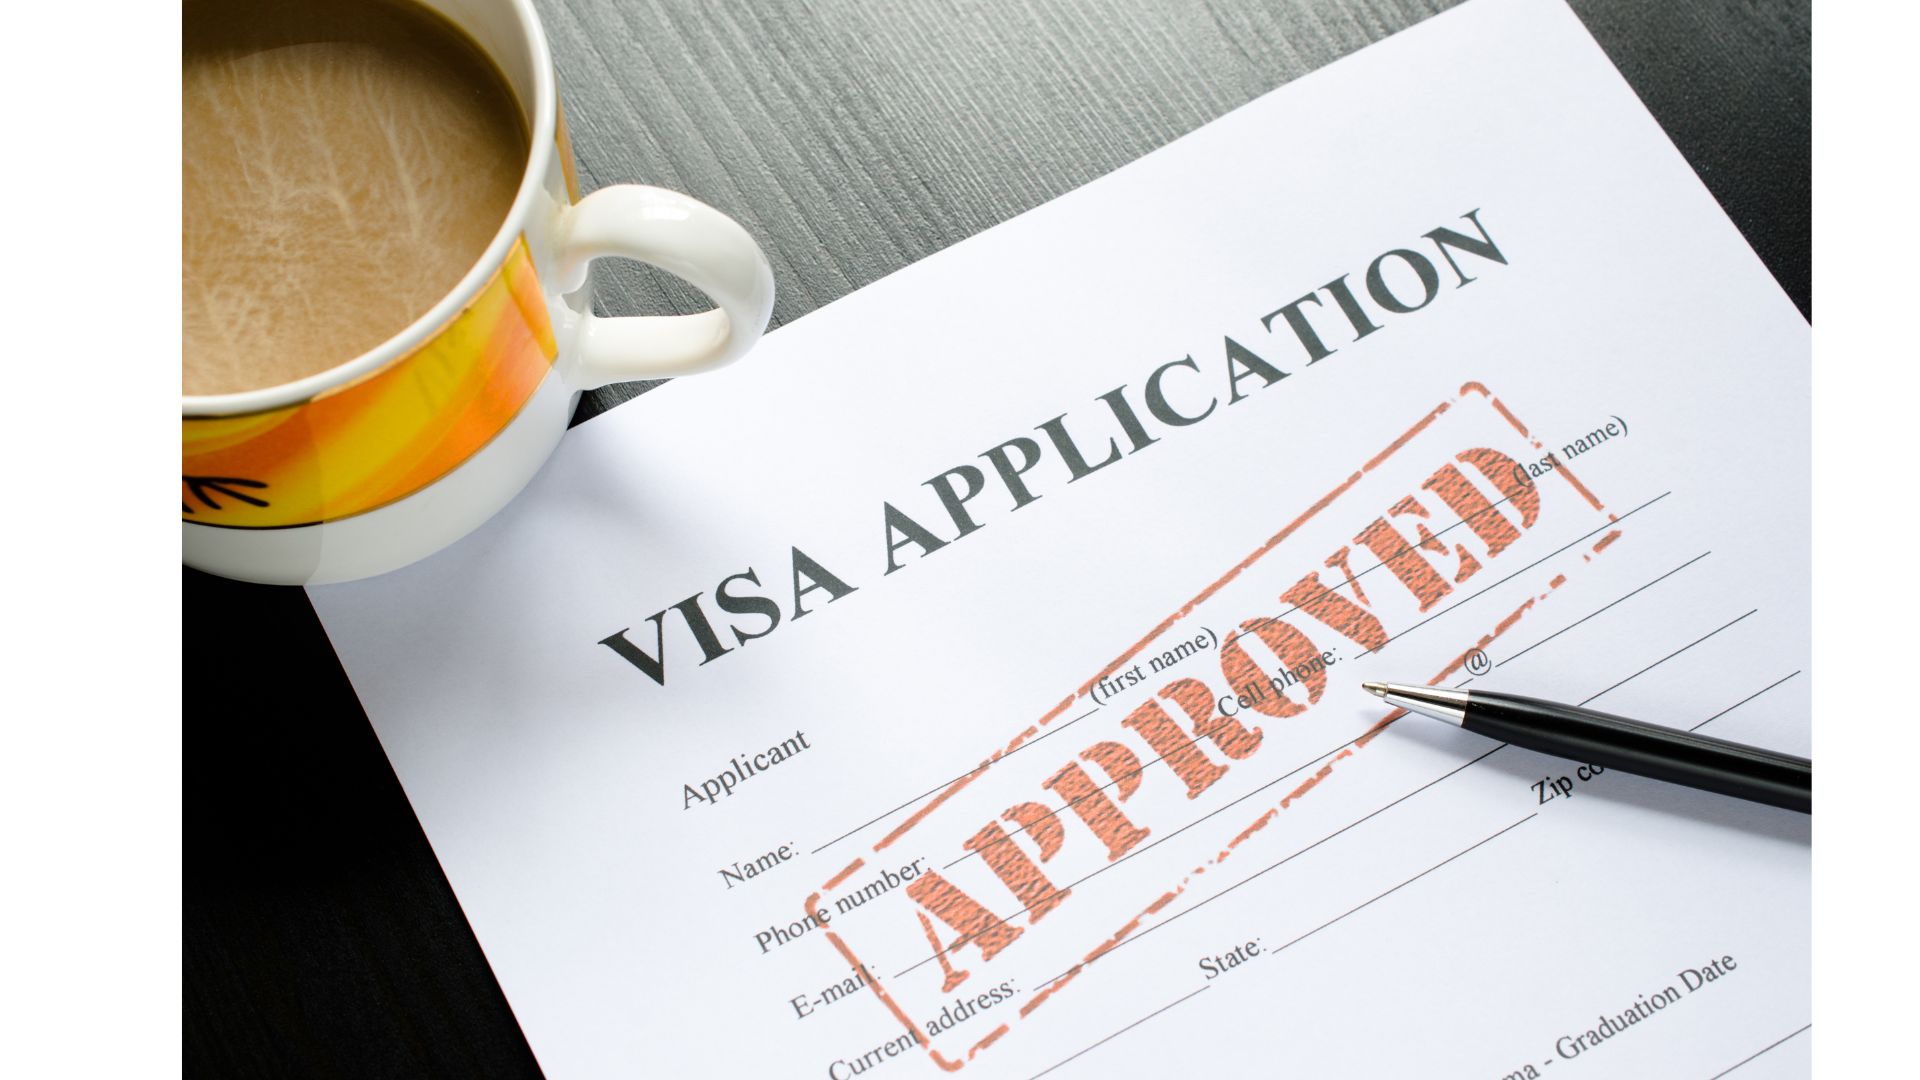 คาดการยกเว้น Visa ไทย-จีนอาจส่งผลให้นักท่องเที่ยวจีนเข้าภูเก็ตเพิ่มขึ้...